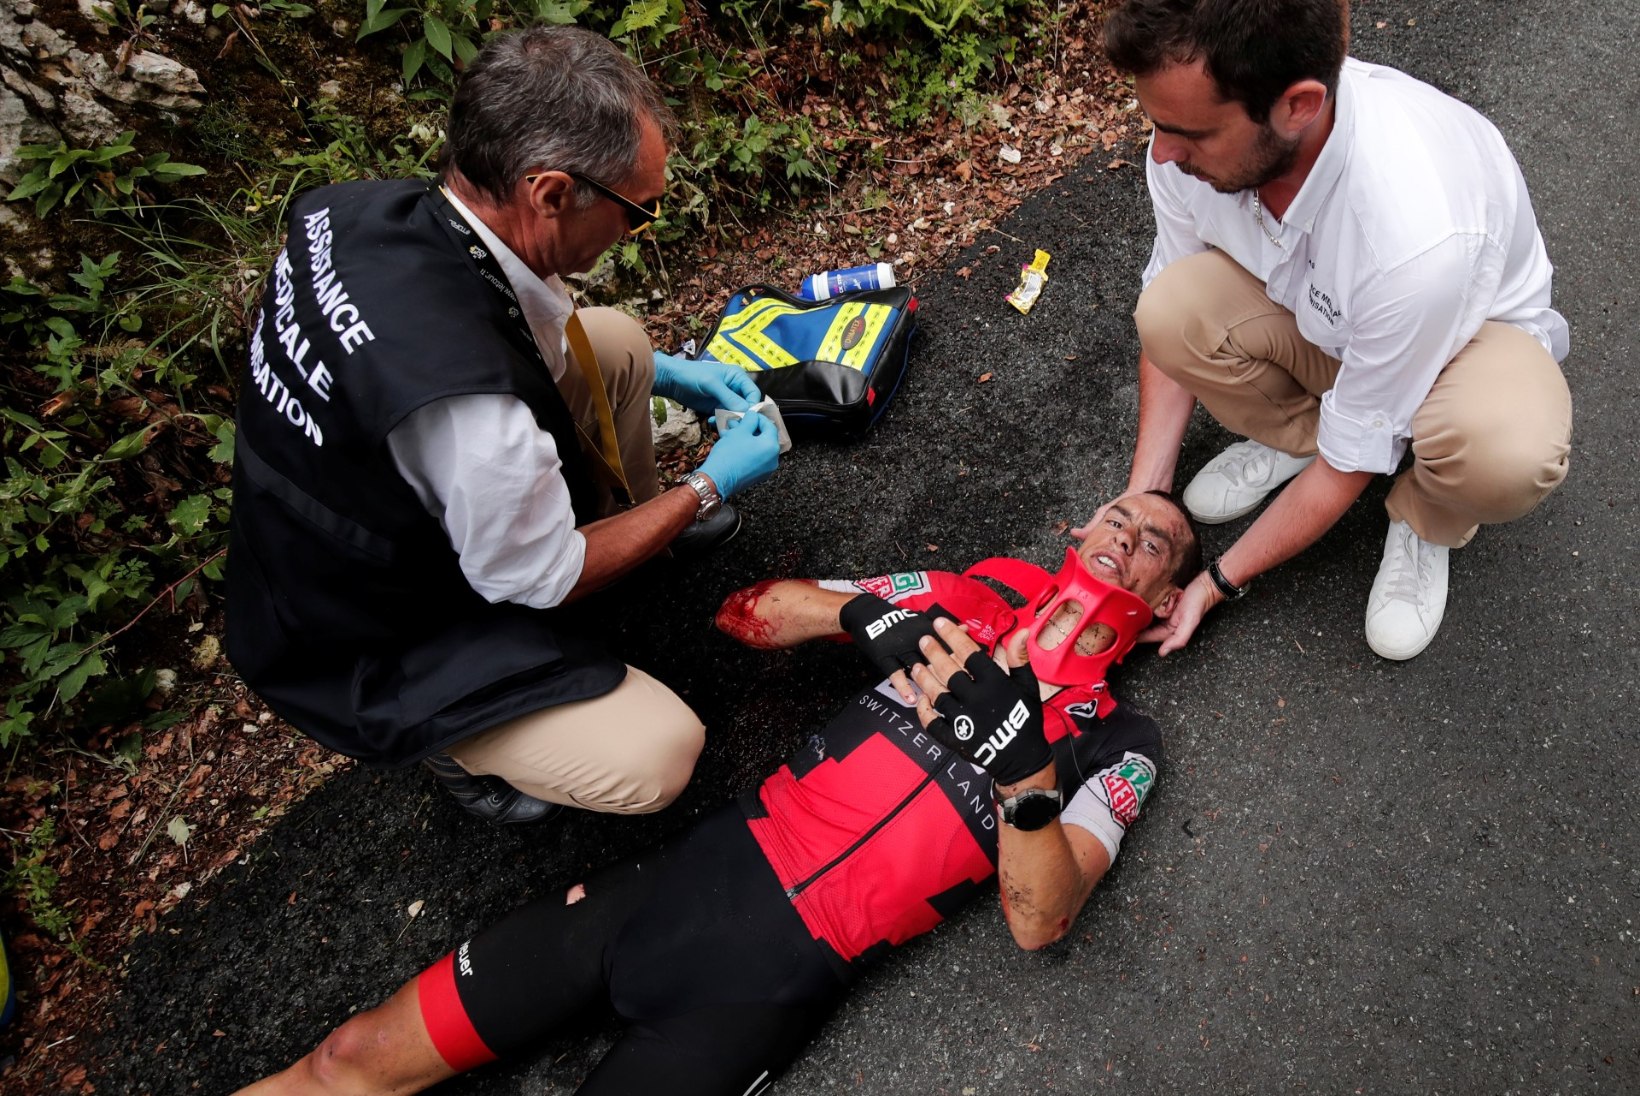 Tour de France'i etapi võitis Rigoberto Uran, Porte kukkus ja katkestas